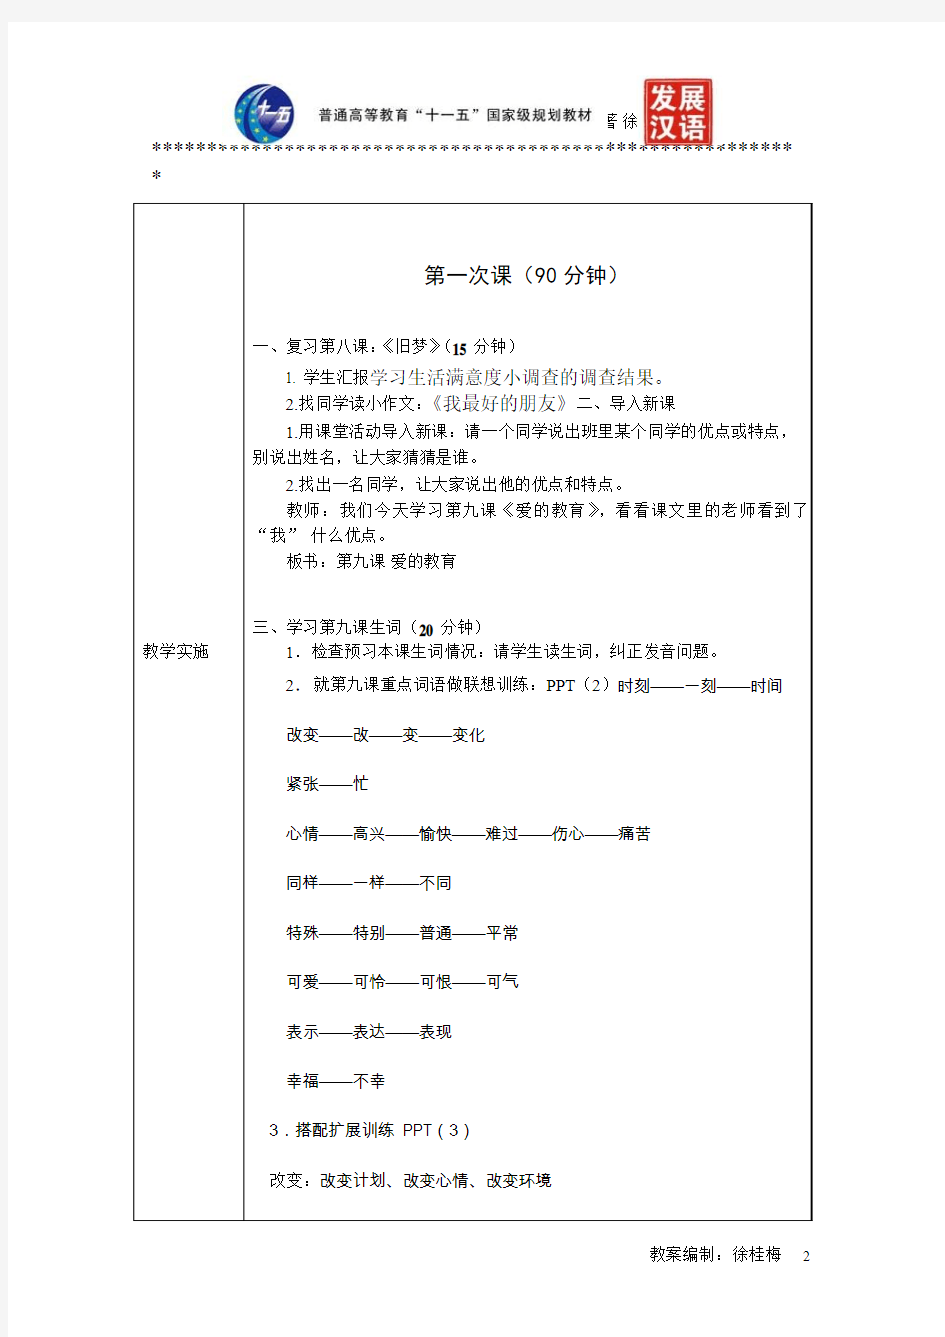 《发展汉语(第二版)综合初级Ⅱ》教案第9课《爱的教育》